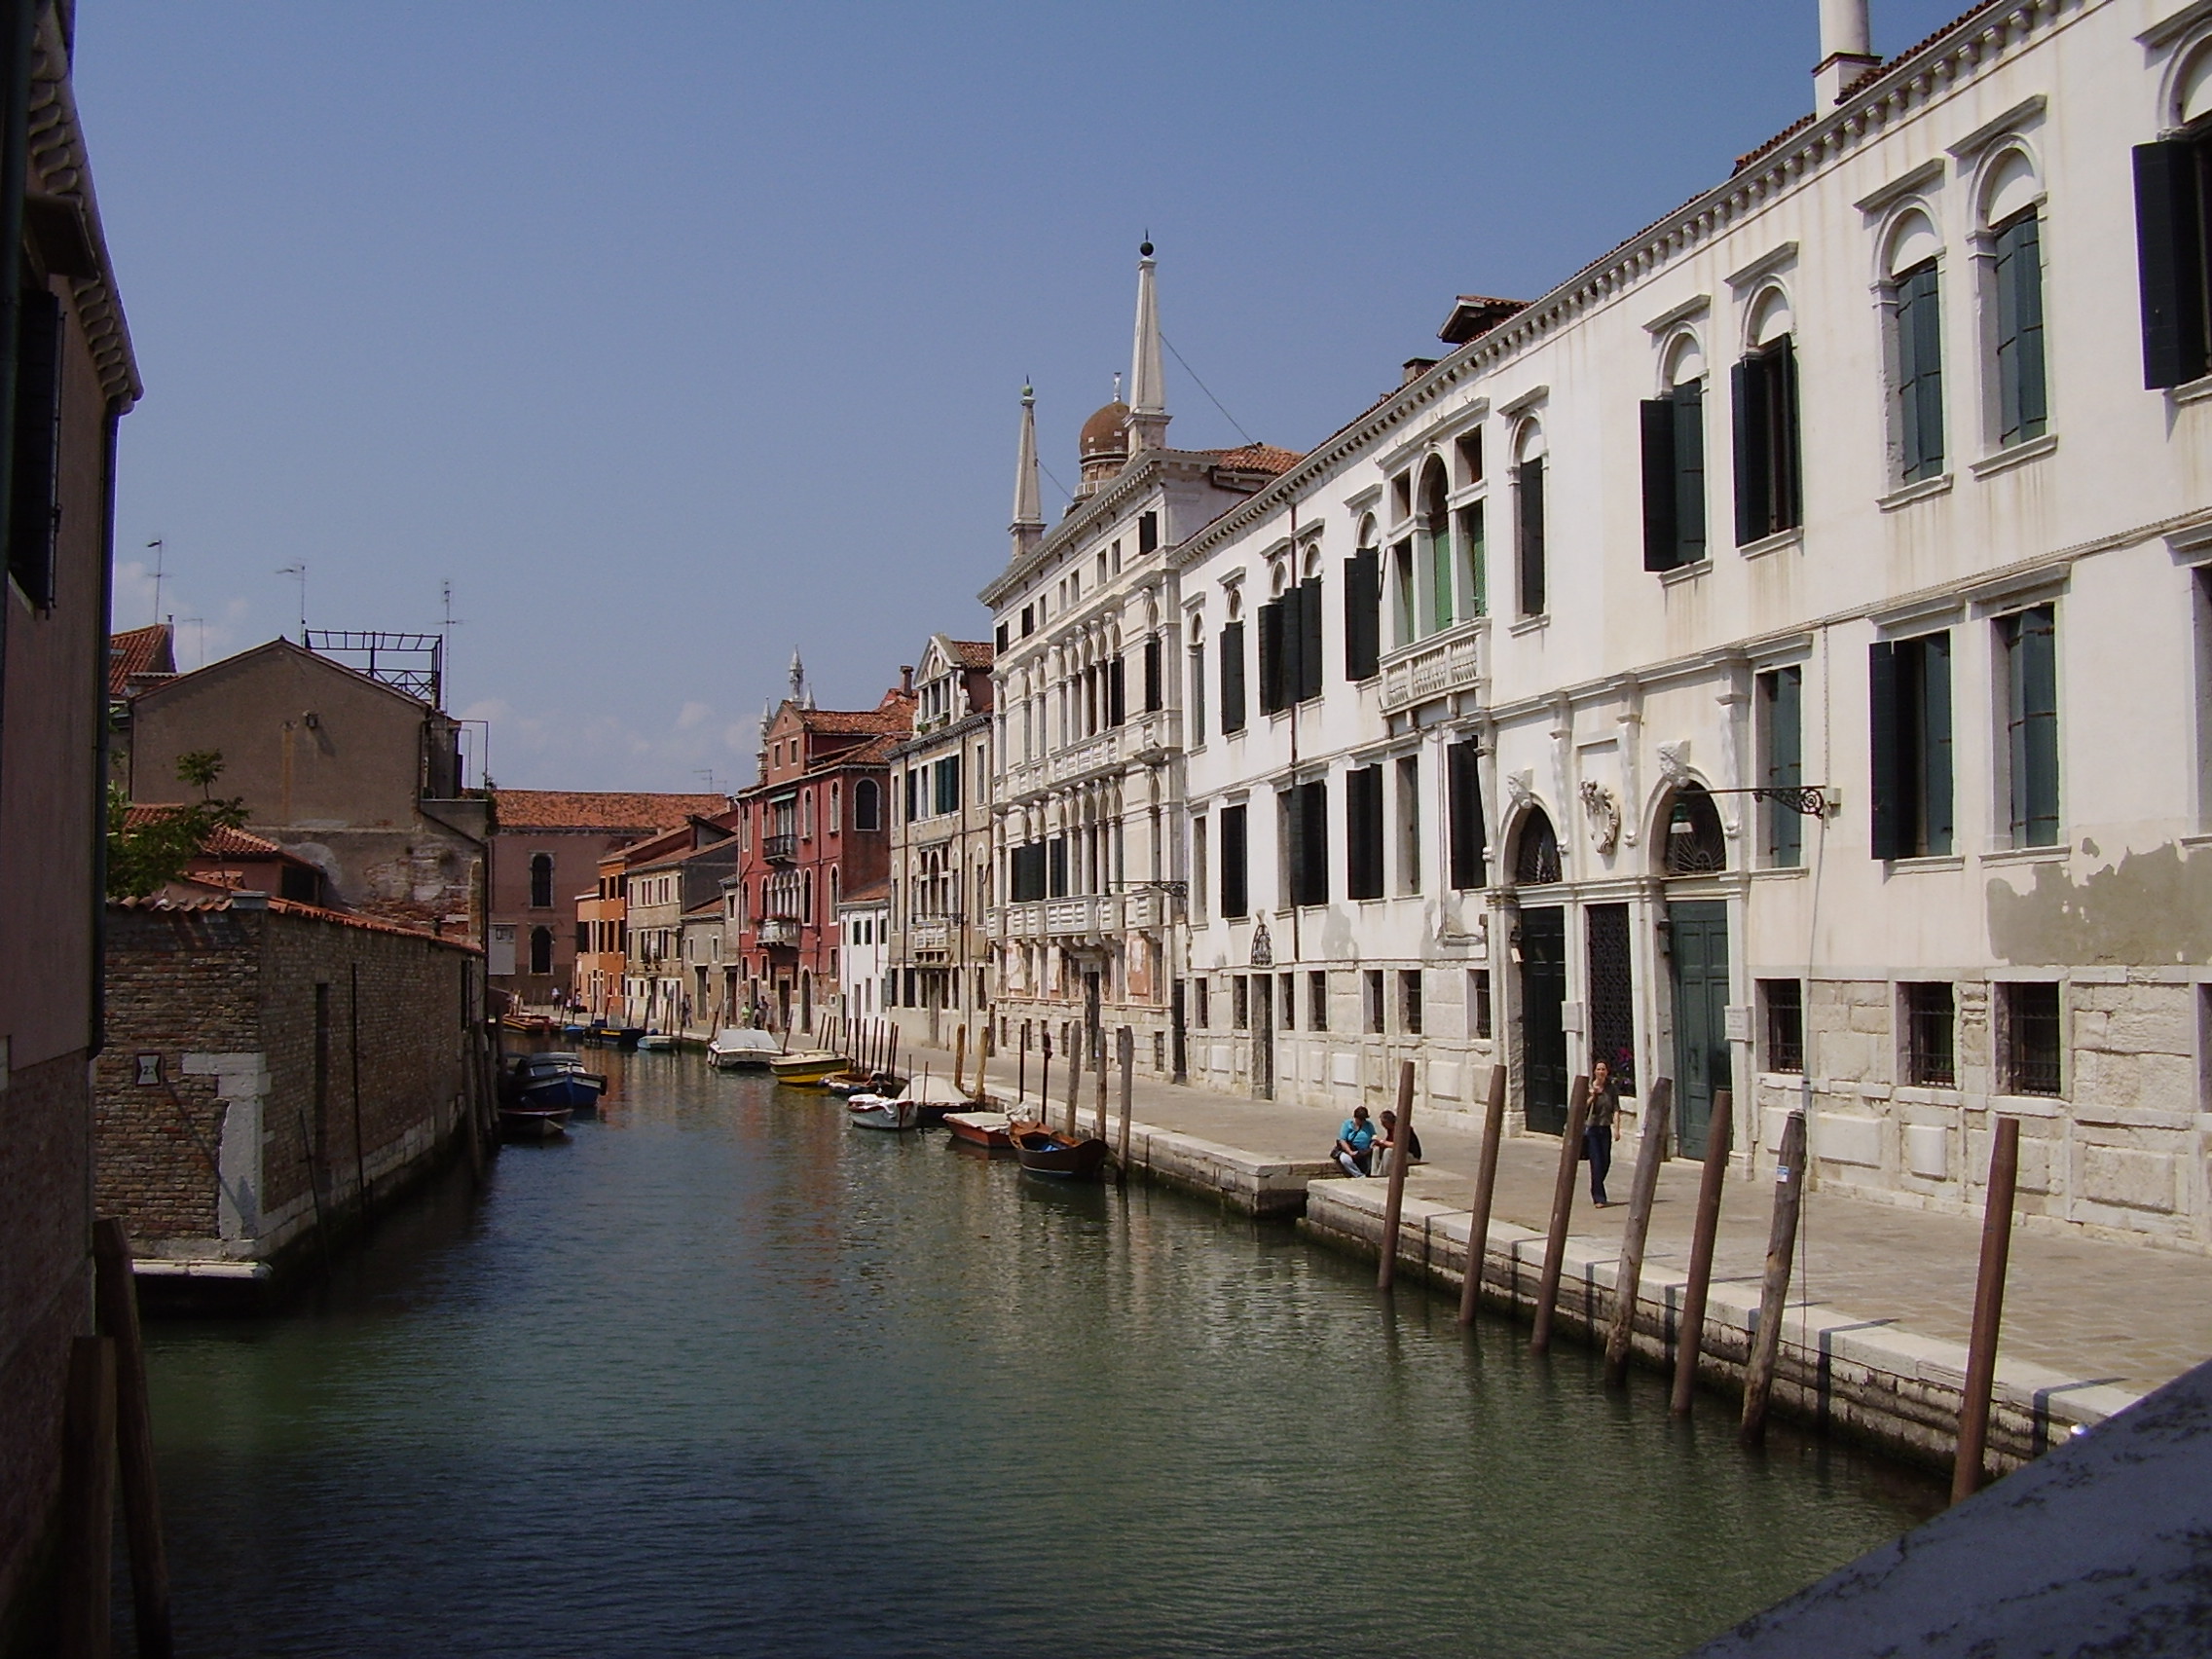 Каналы Венеции - Венето - частный гид по Италии